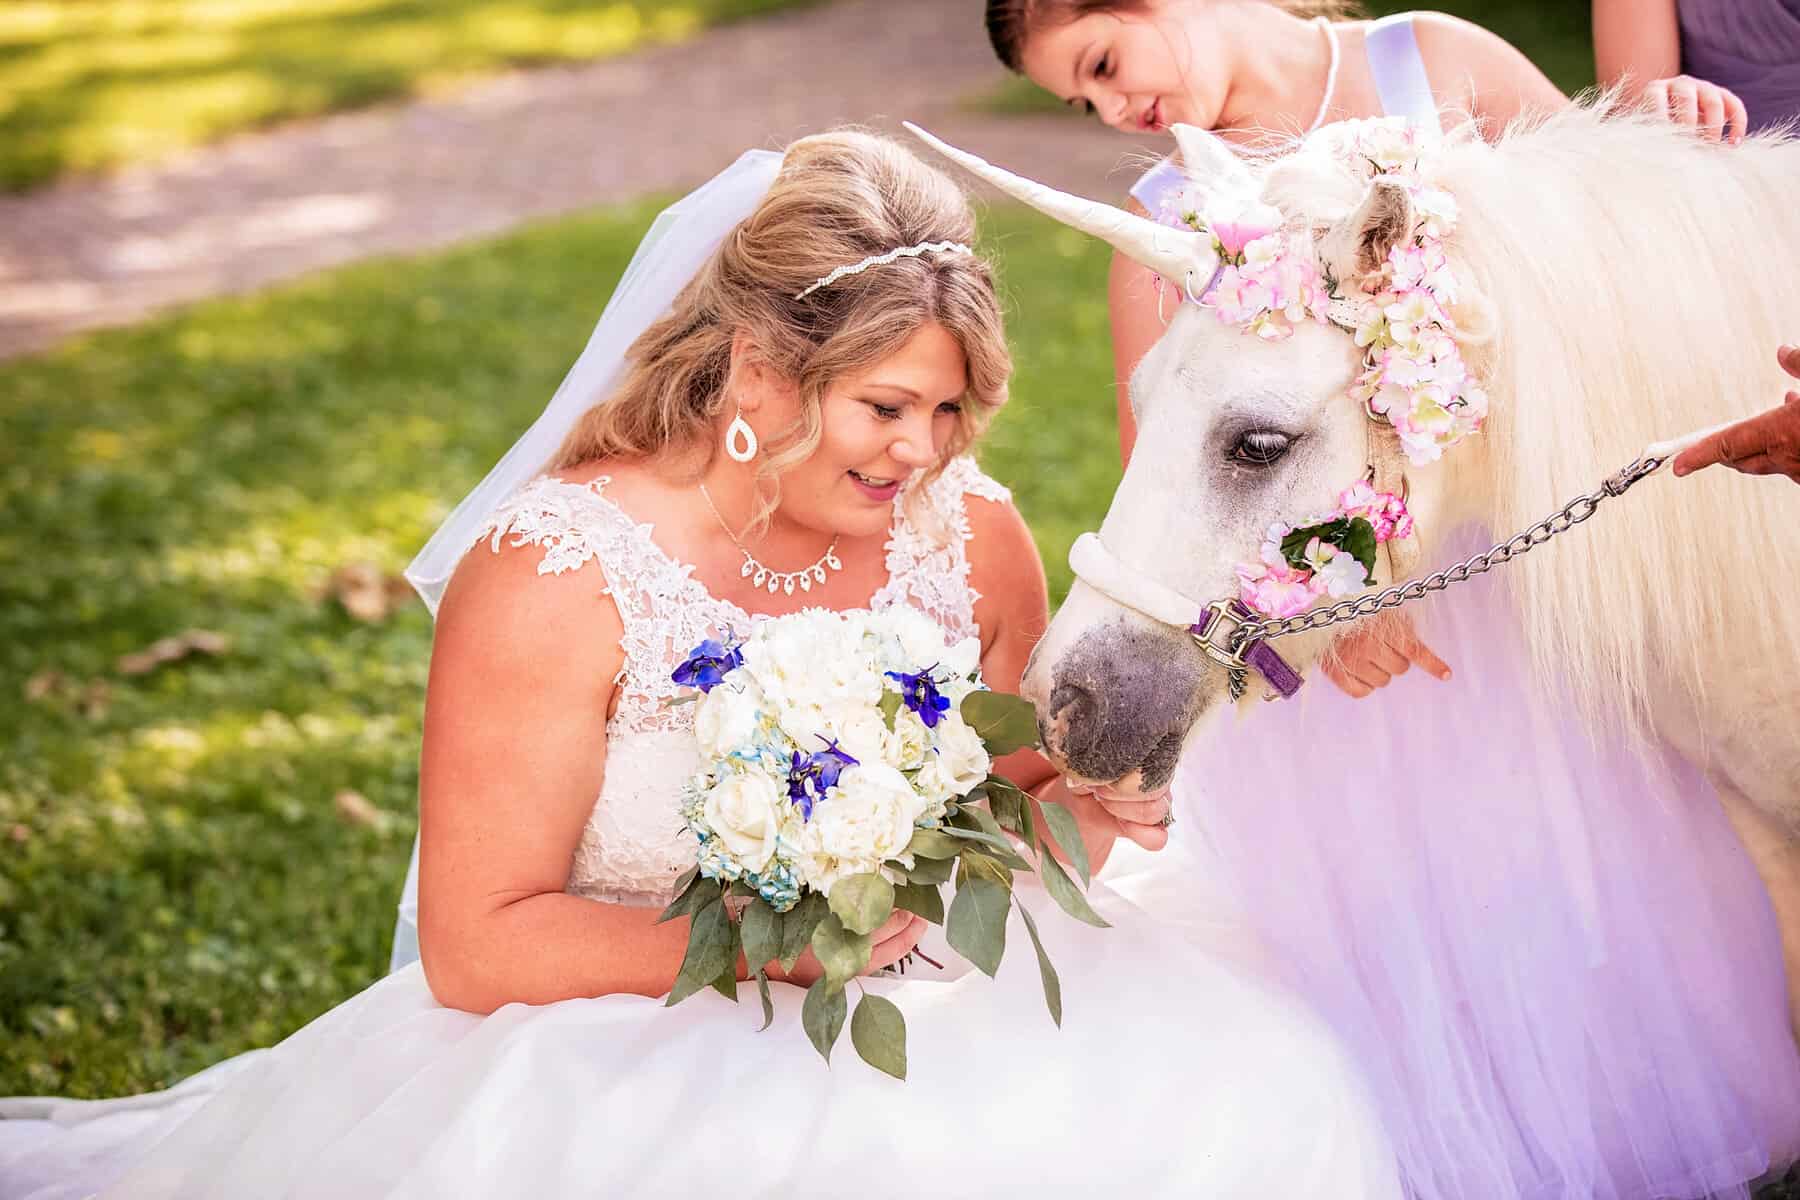 A bride is petting a white unicorn.